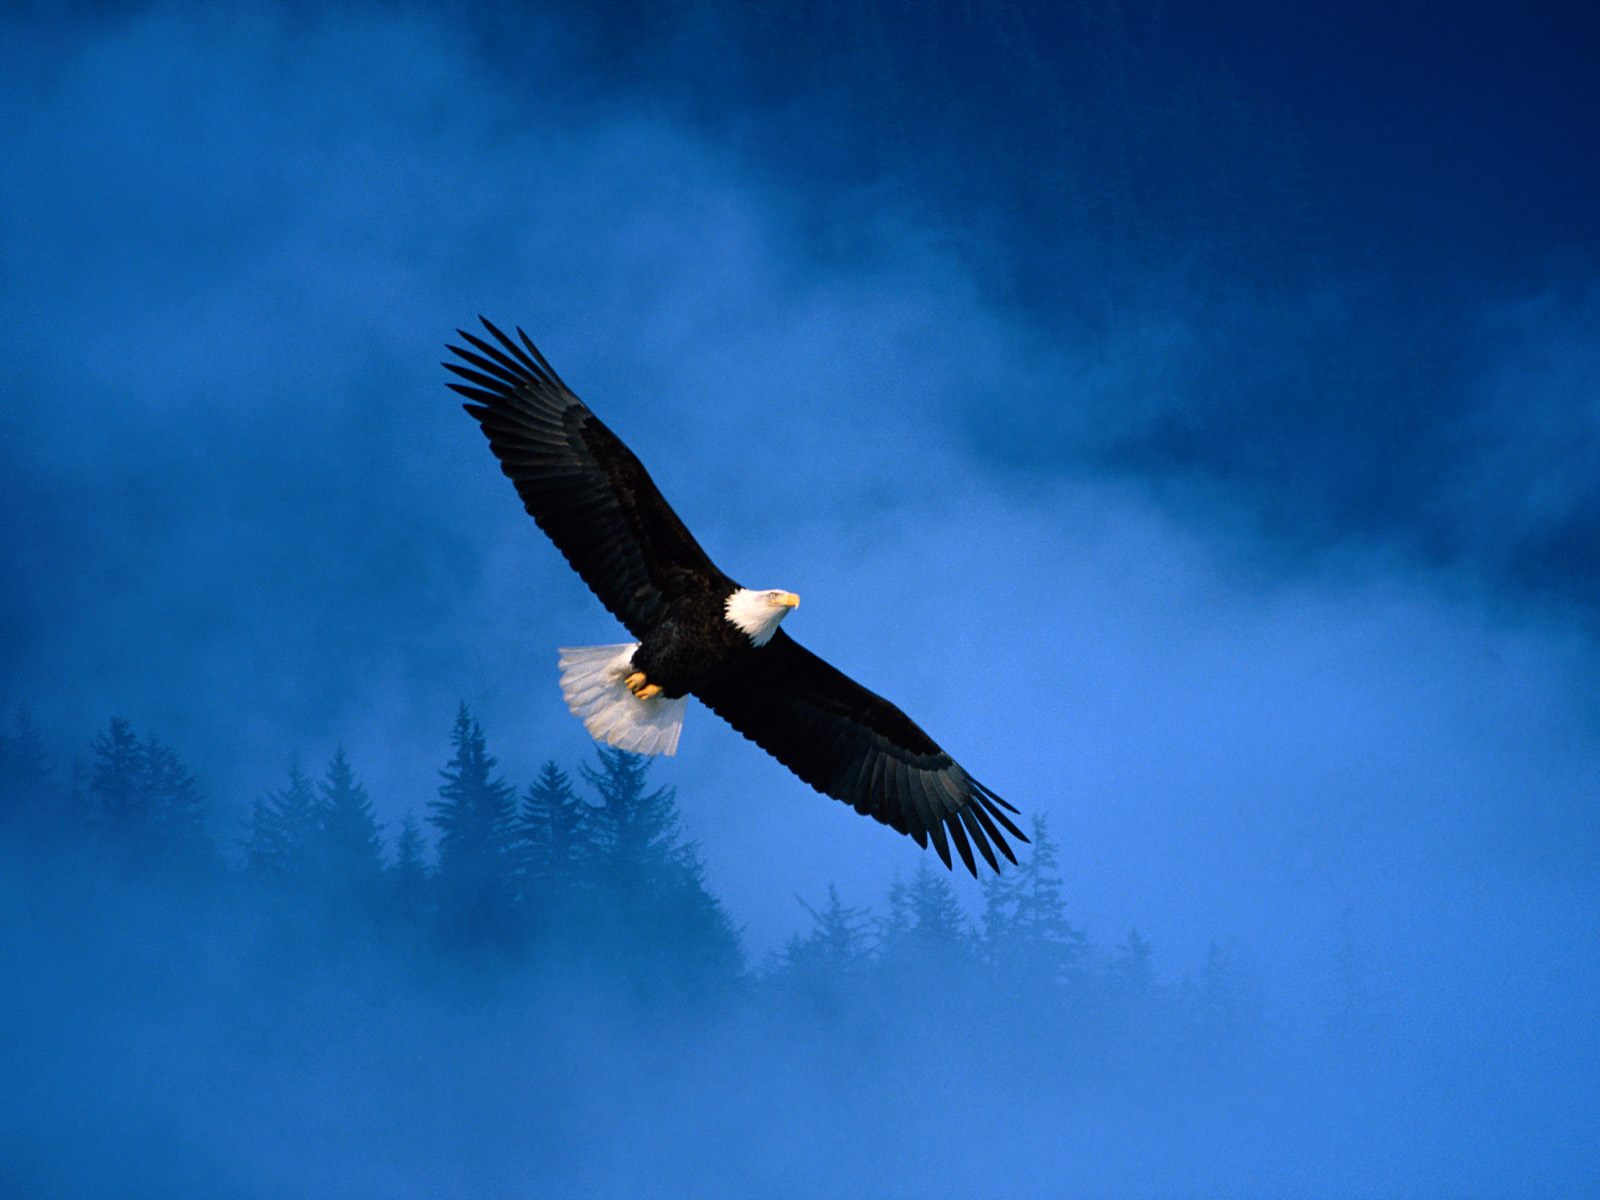 http://2.bp.blogspot.com/_wk_IKE_3S3g/TFBOsJT_7GI/AAAAAAAAADg/MrMdUdUsAU8/s1600/flight-of-freedom-bald-eagle-alaska-pictures.jpg